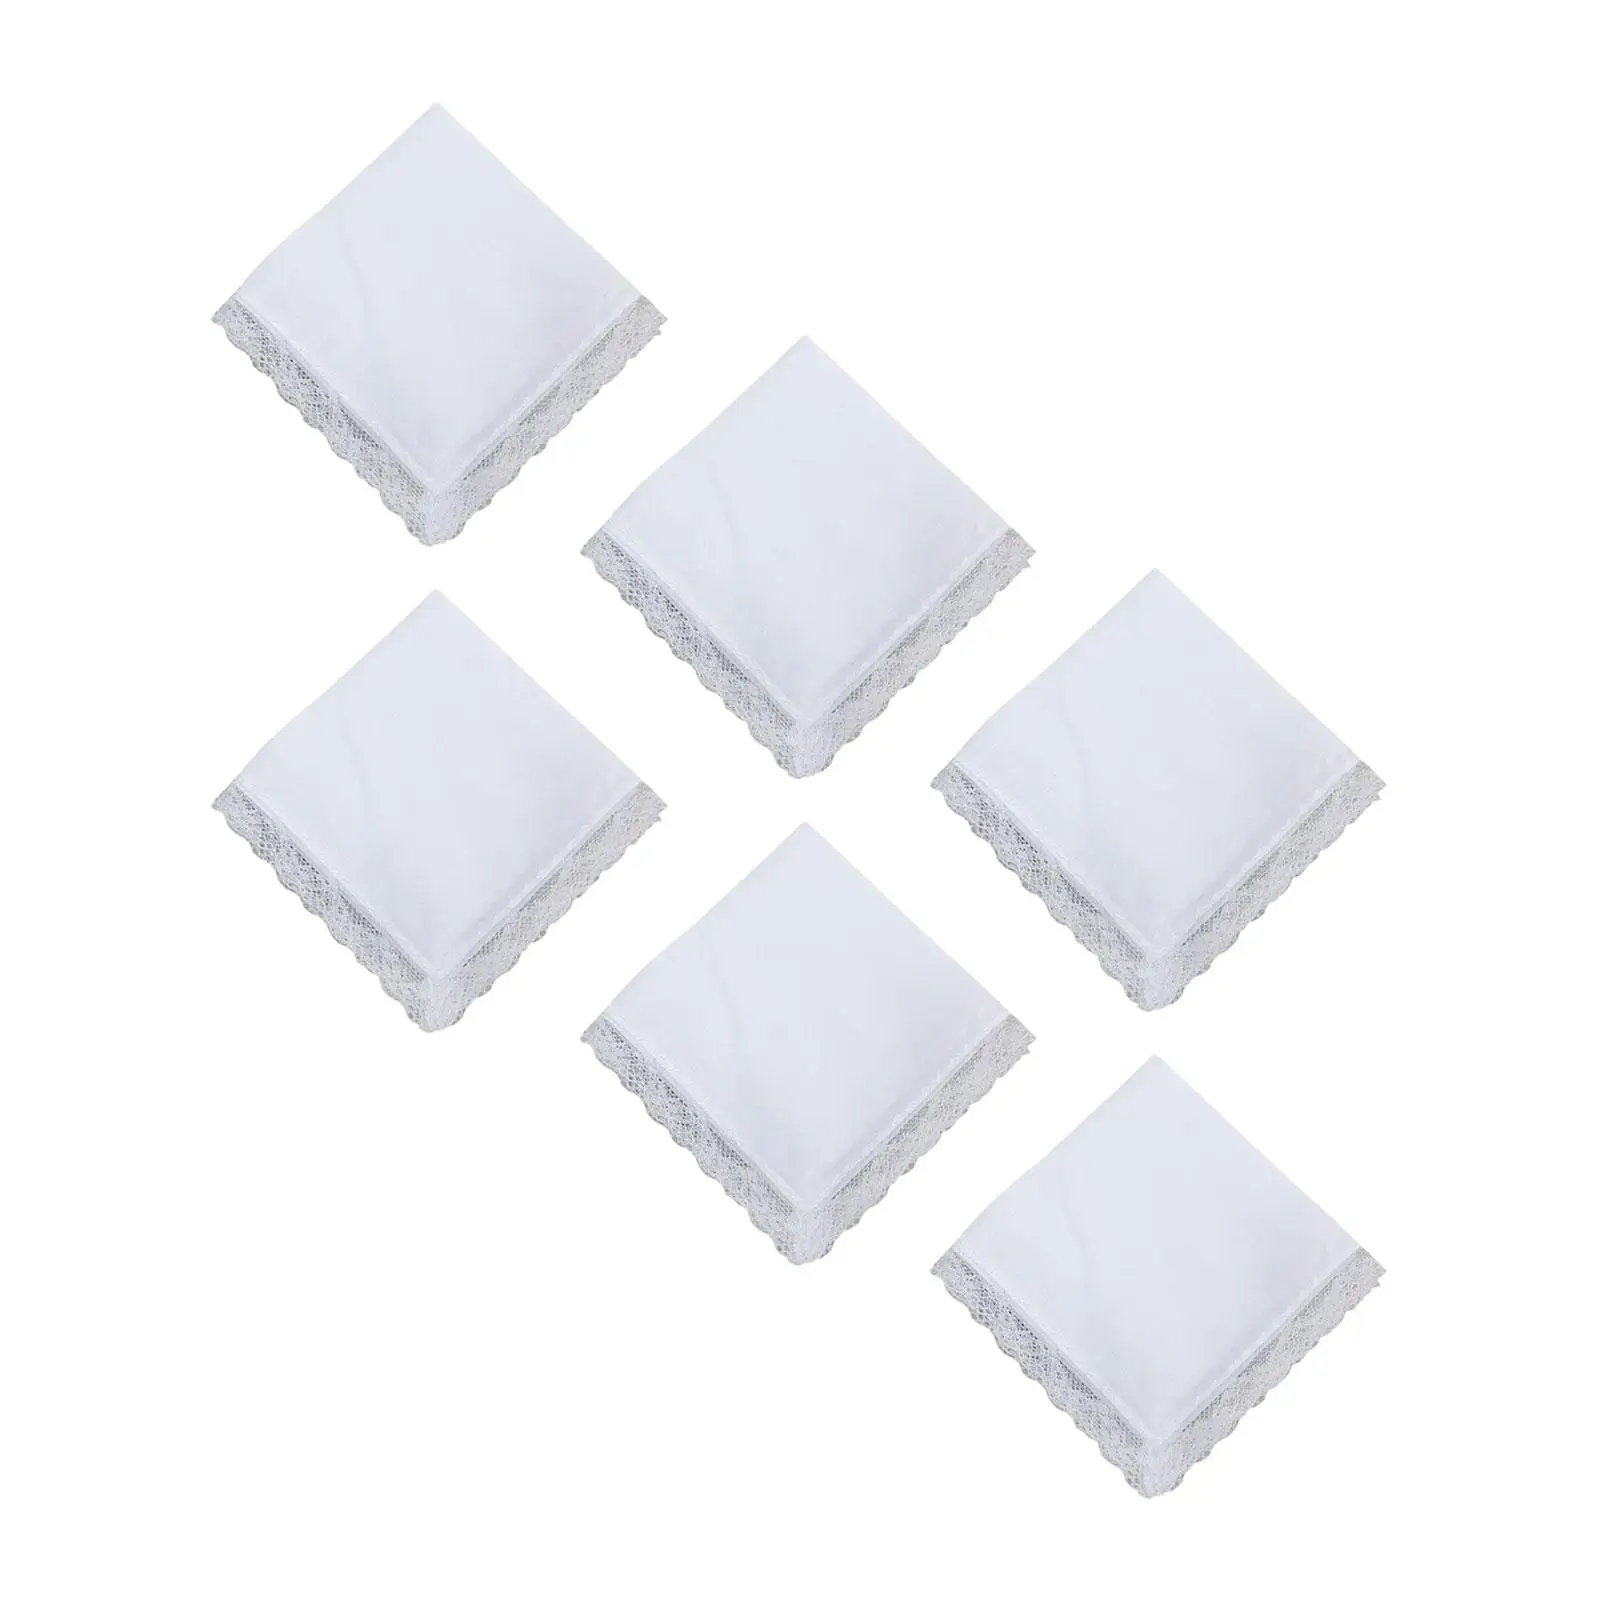 6Pcs White Cotton Handkerchiefs Reusable DIY Craft Needs Washable Soft Bulk Hanky for Women Ladies Children Party Celebration